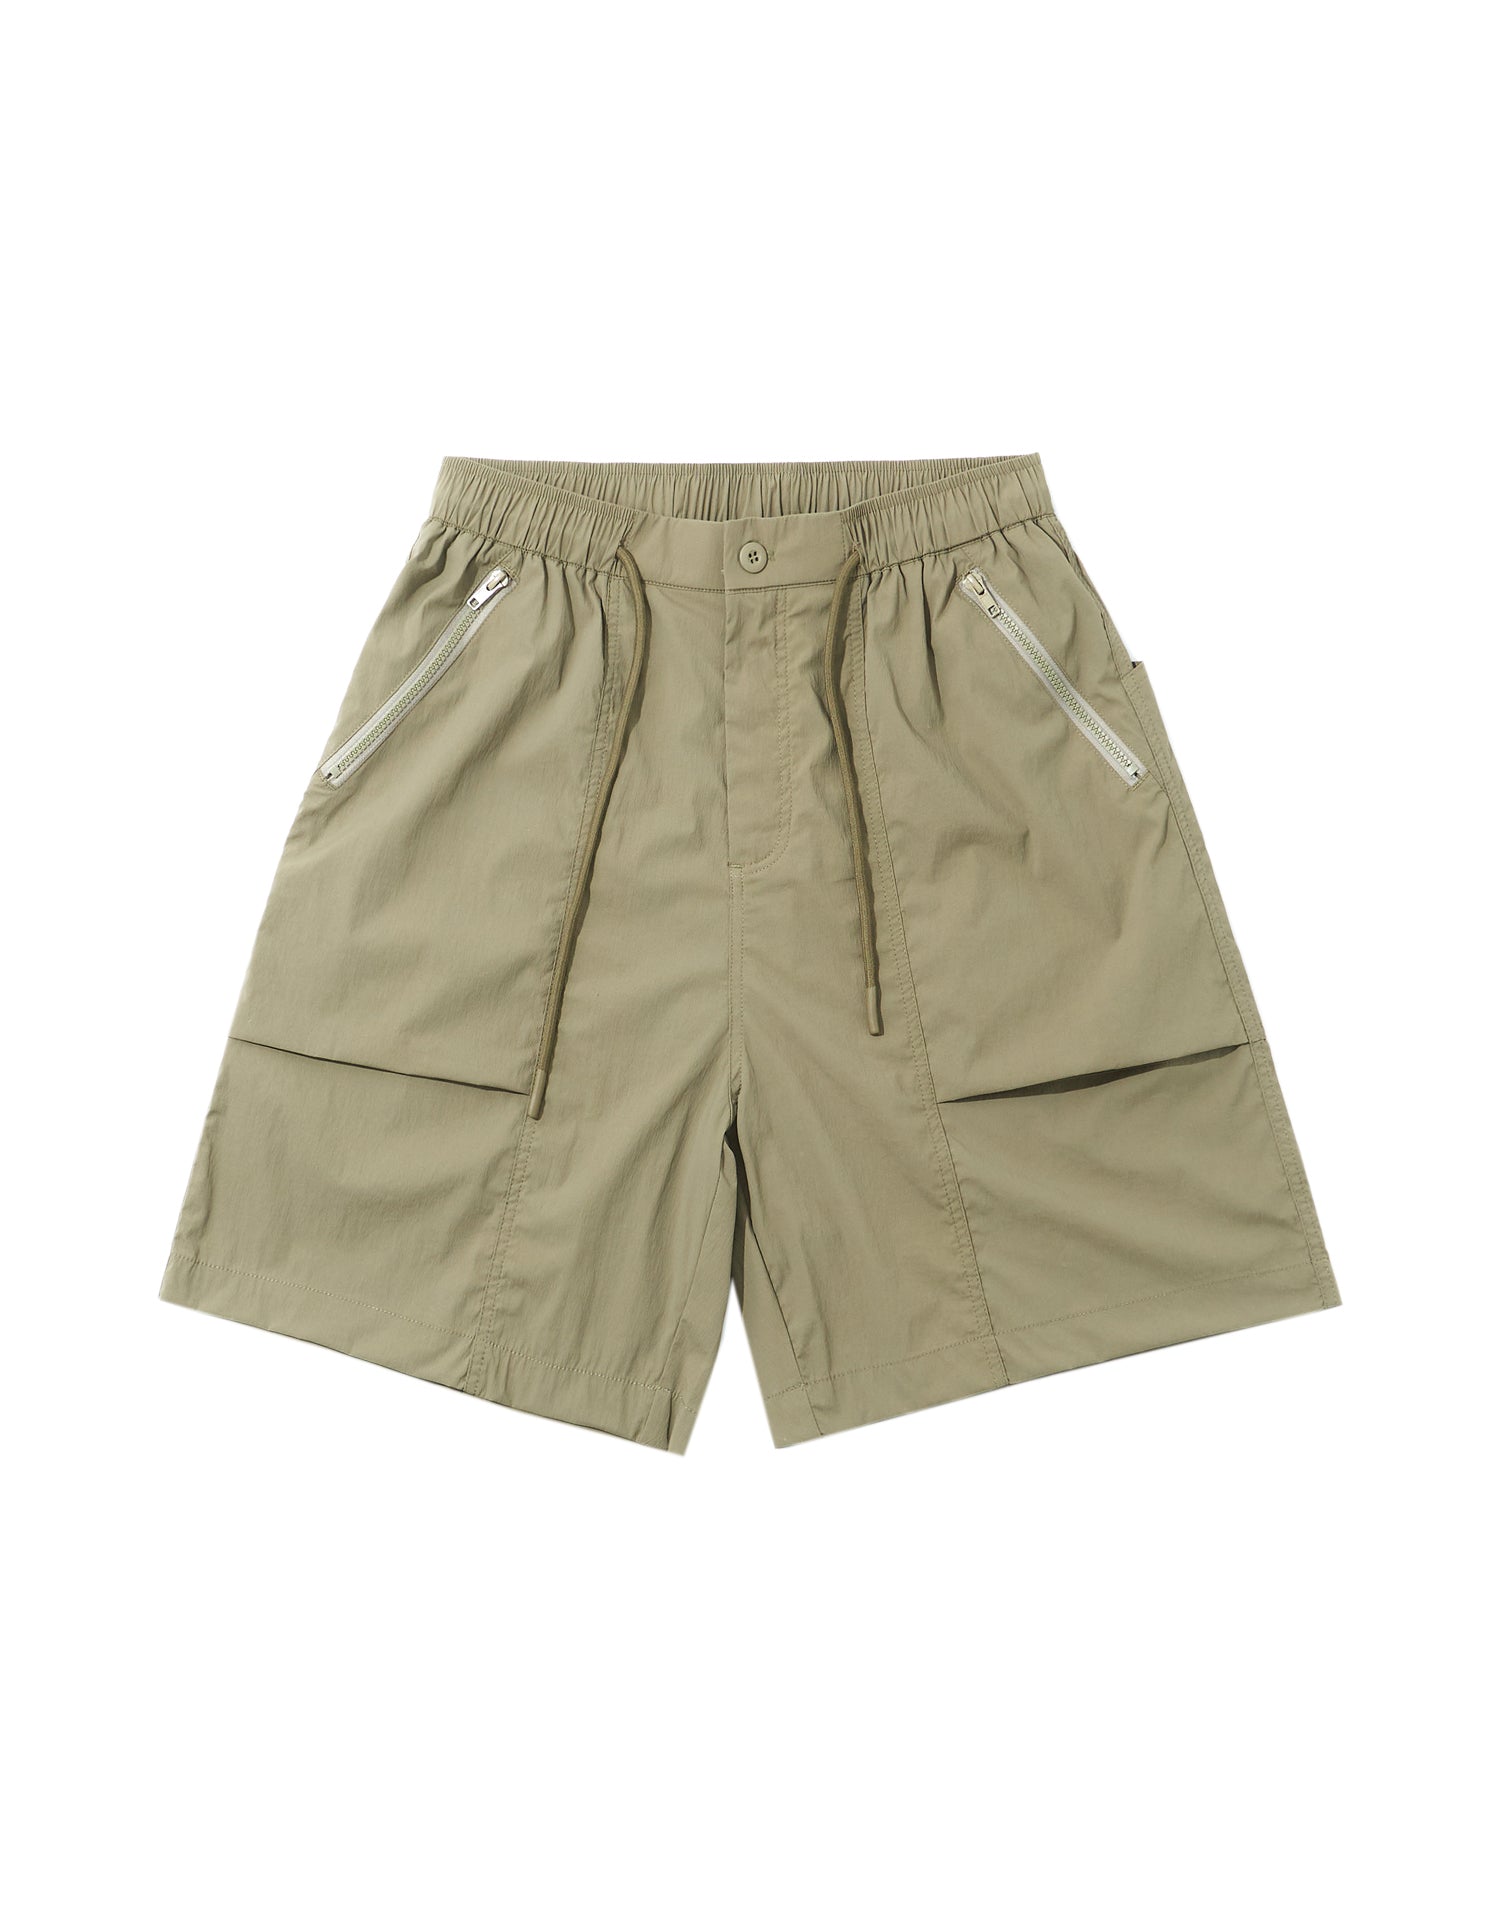 TopBasics Zip-Pockets Cargo Shorts